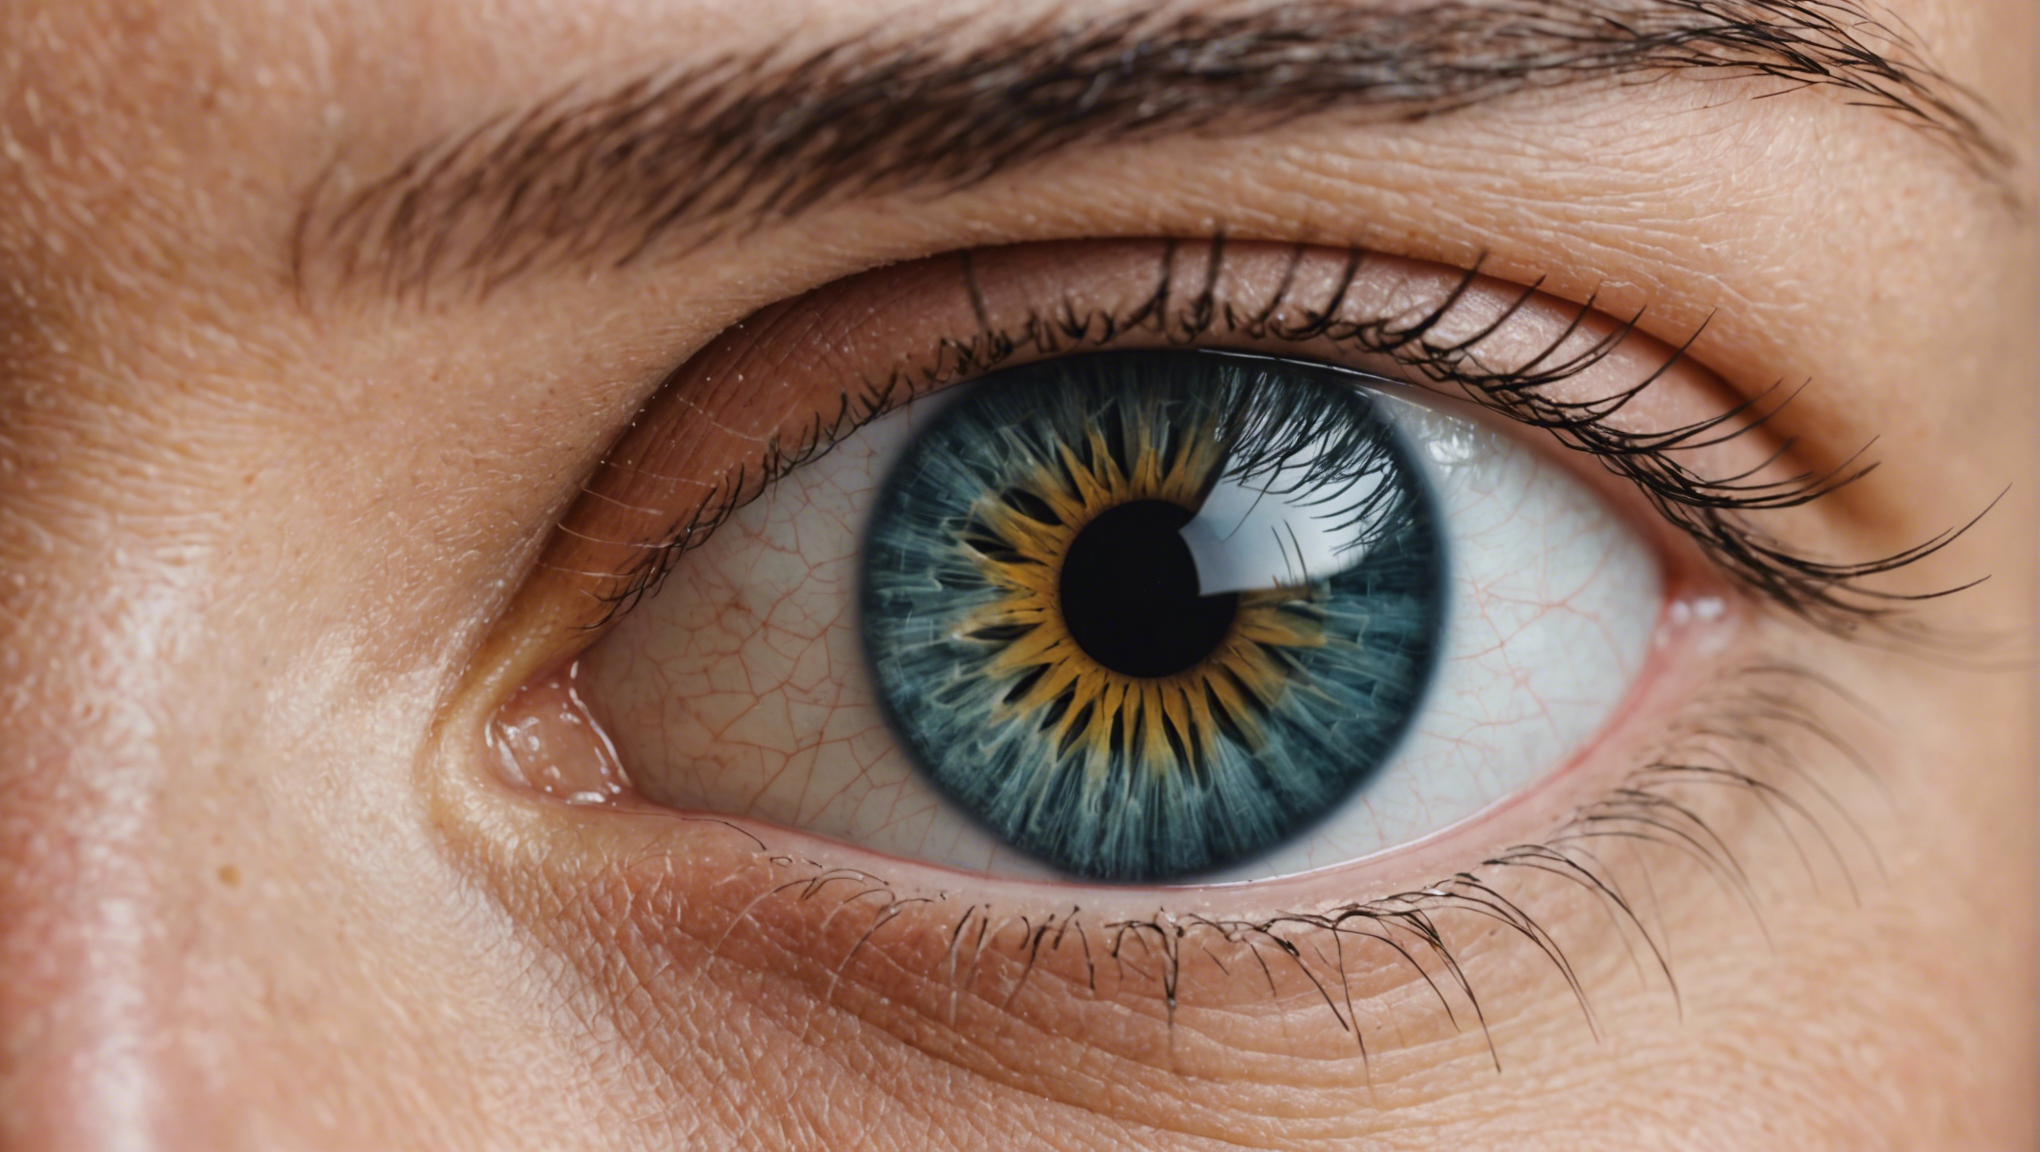 le glaucome est une maladie de l'œil caractérisée par une augmentation de la pression intraoculaire, pouvant entraîner des dommages au nerf optique. découvrez les symptômes, les facteurs de risque et les traitements du glaucome.